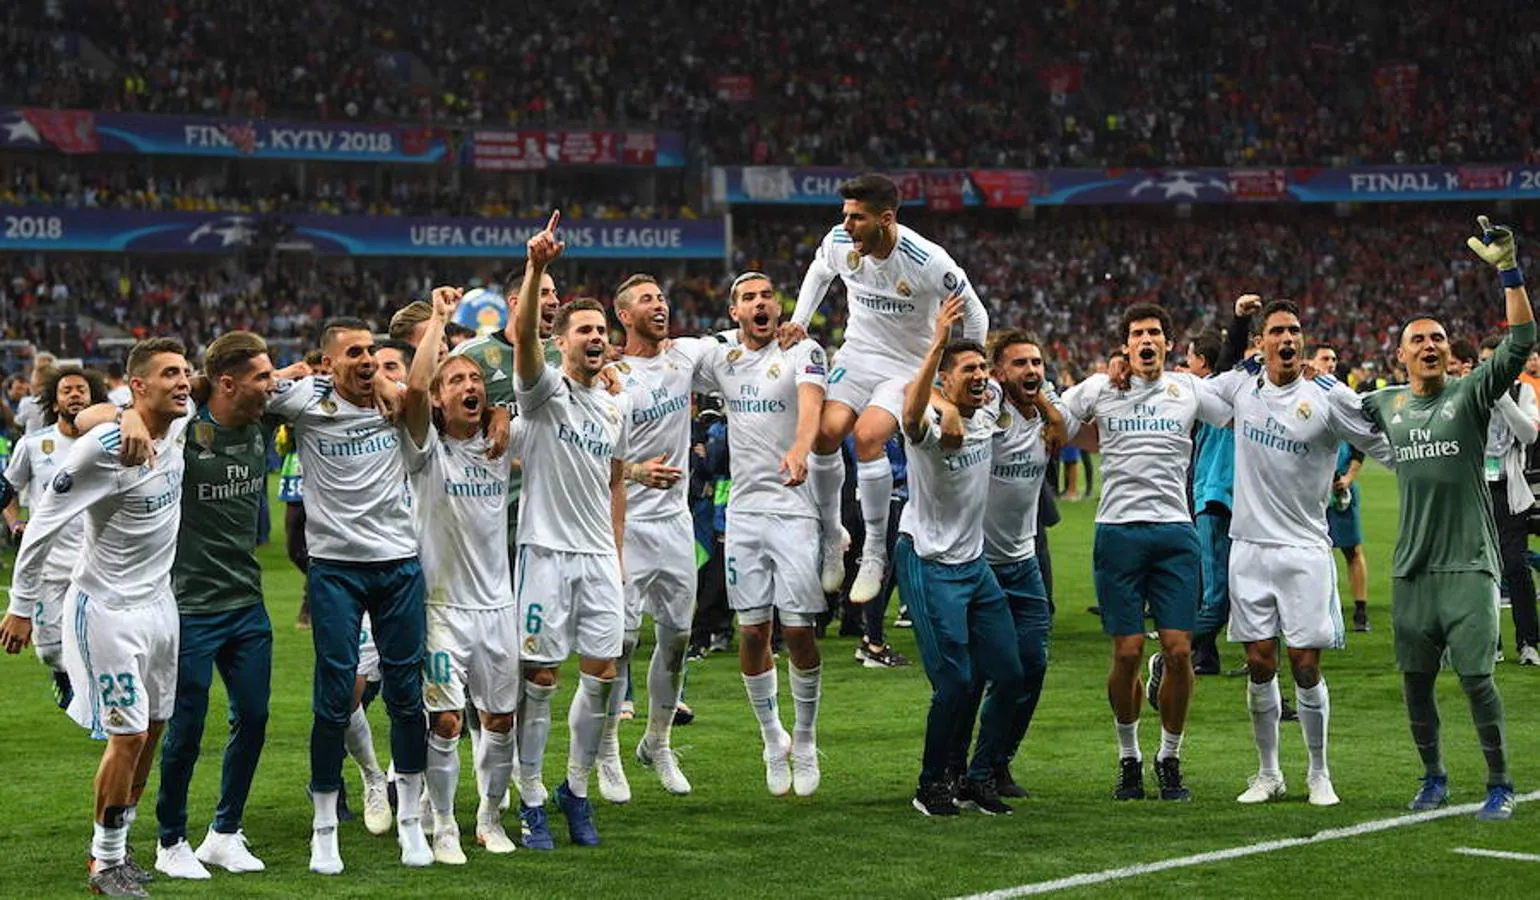 Los jugadores del Real Madrid celebran el título europeo conseguido en 2018 en Kiev. Este título frente al Liverpool supone el decimotercer entorchado europeo, y el tercero de forma consecutiva. Algo sin precedentes.